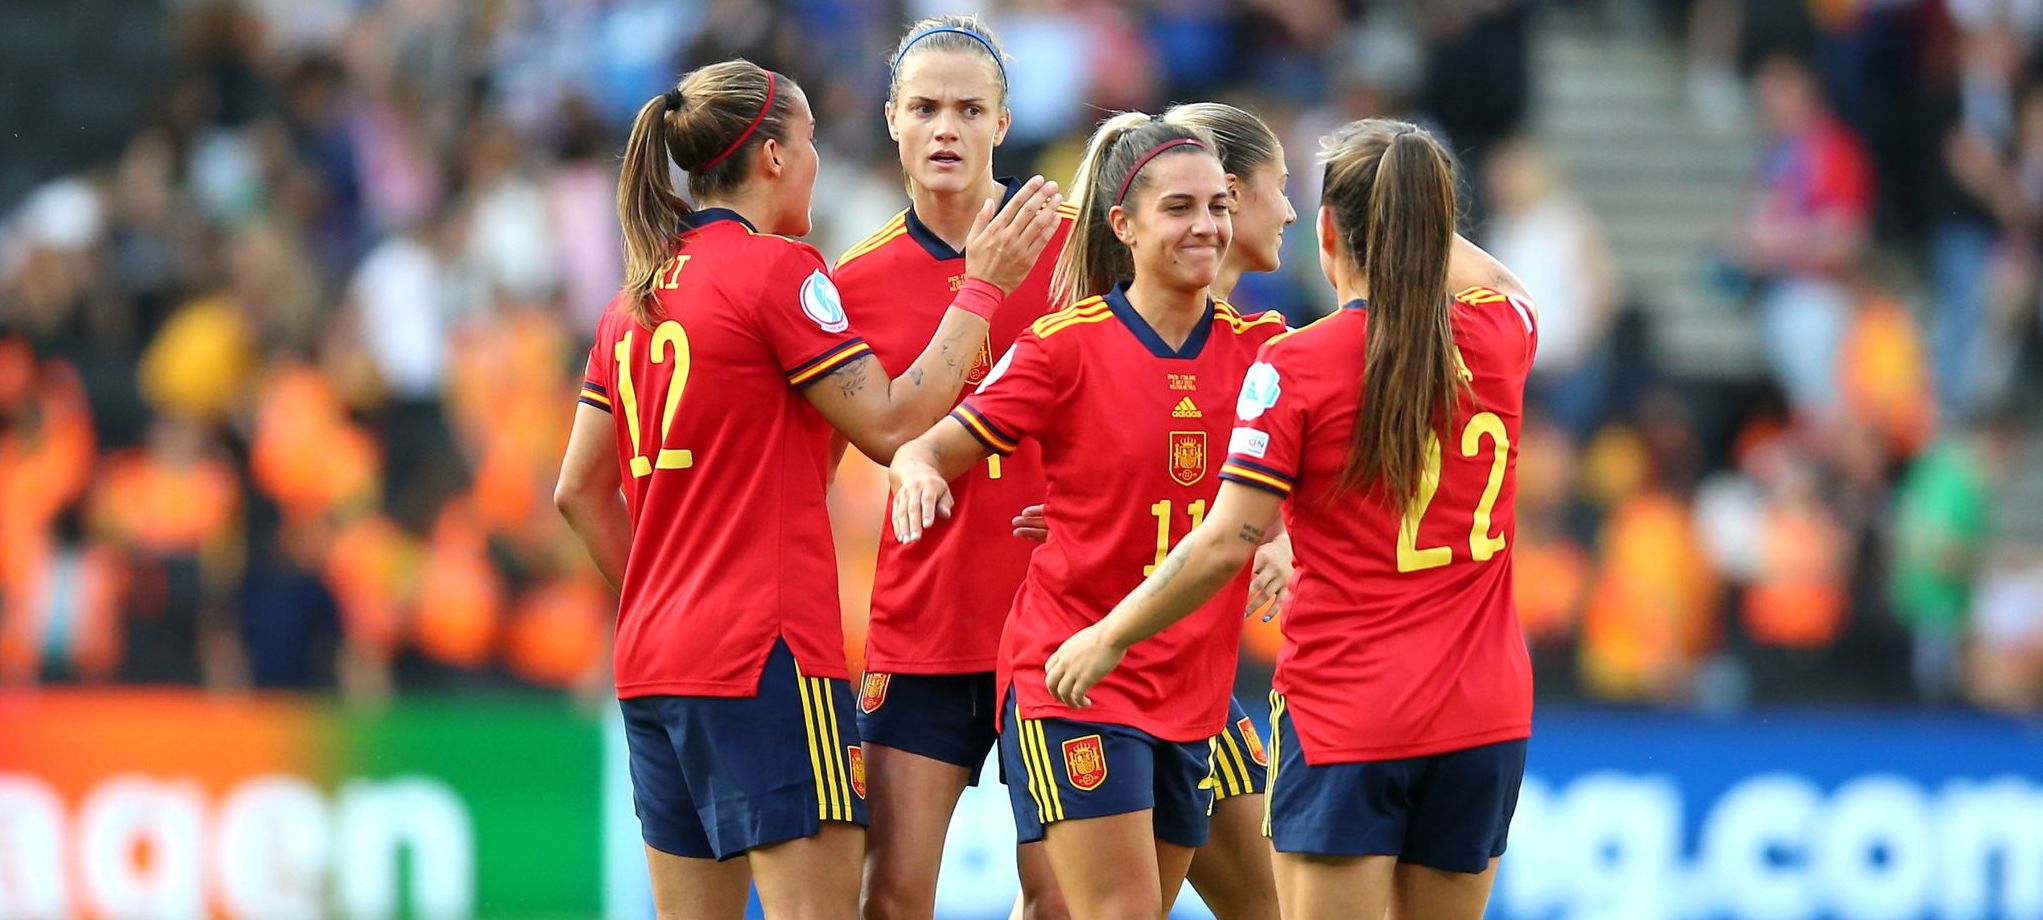 Piala Eropa Wanita 2022: Timnas Spanyol Pede Bisa Kalahkan Inggris di Perempat Final